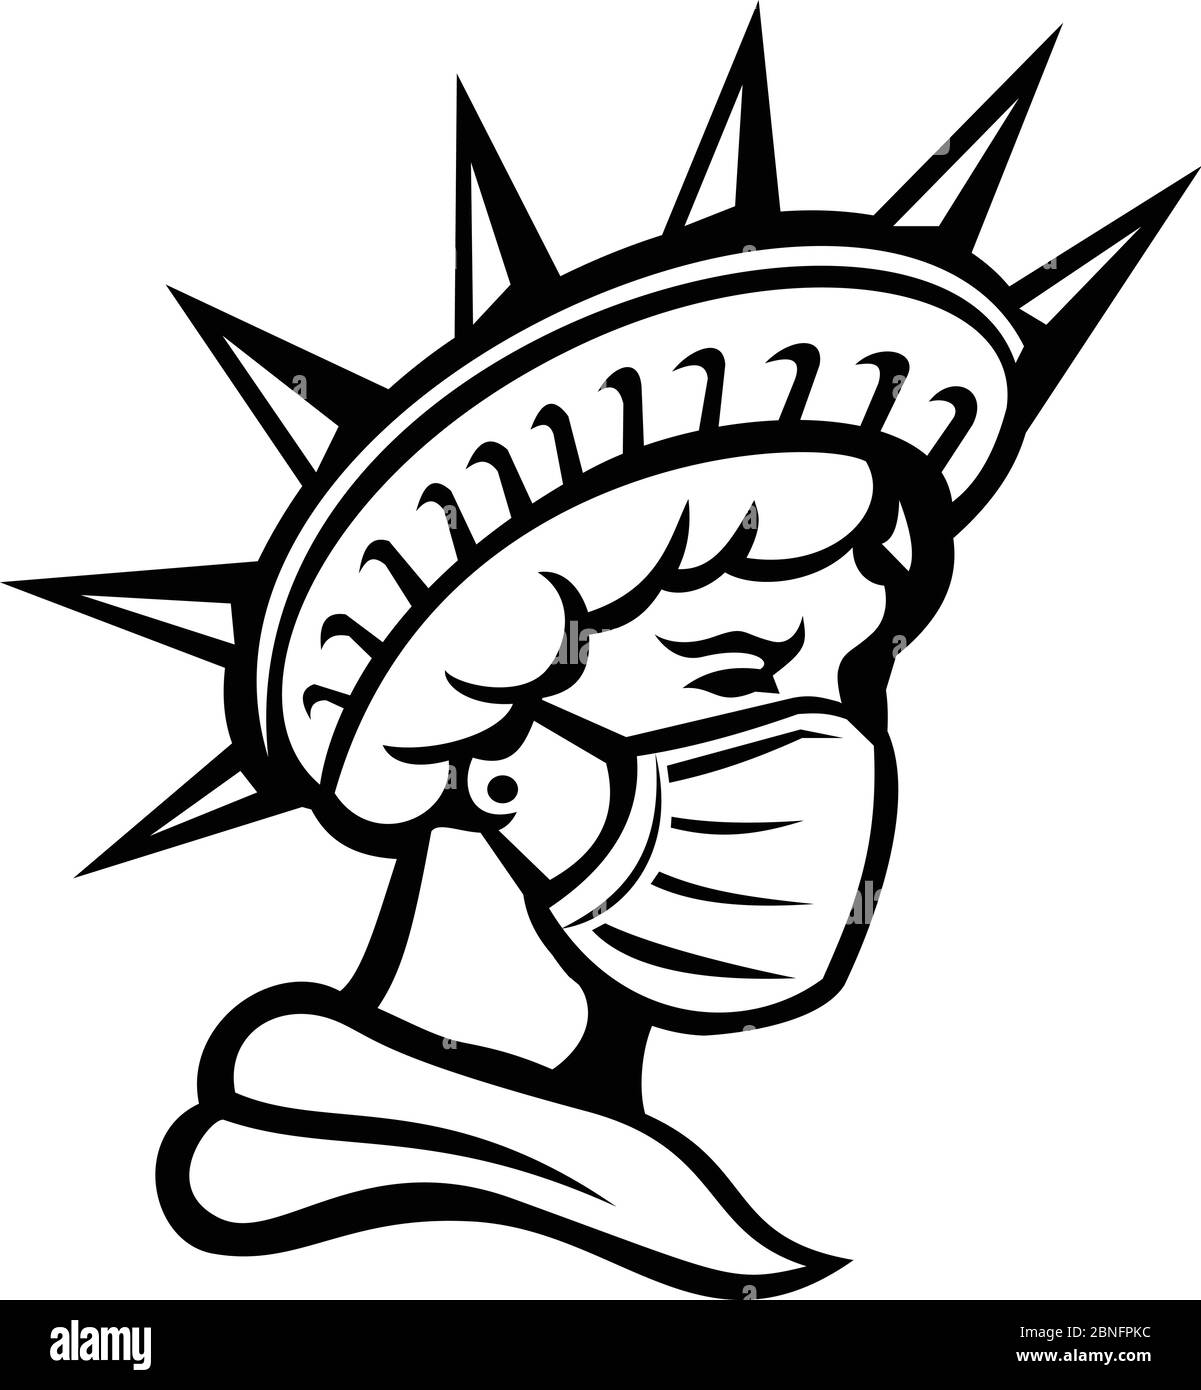 Icona Mascot illustrazione di testa di libertà o Libertas, il simbolo americano simbolo di giustizia e libertà indossare maschera chirurgica per proteggere la salute Illustrazione Vettoriale